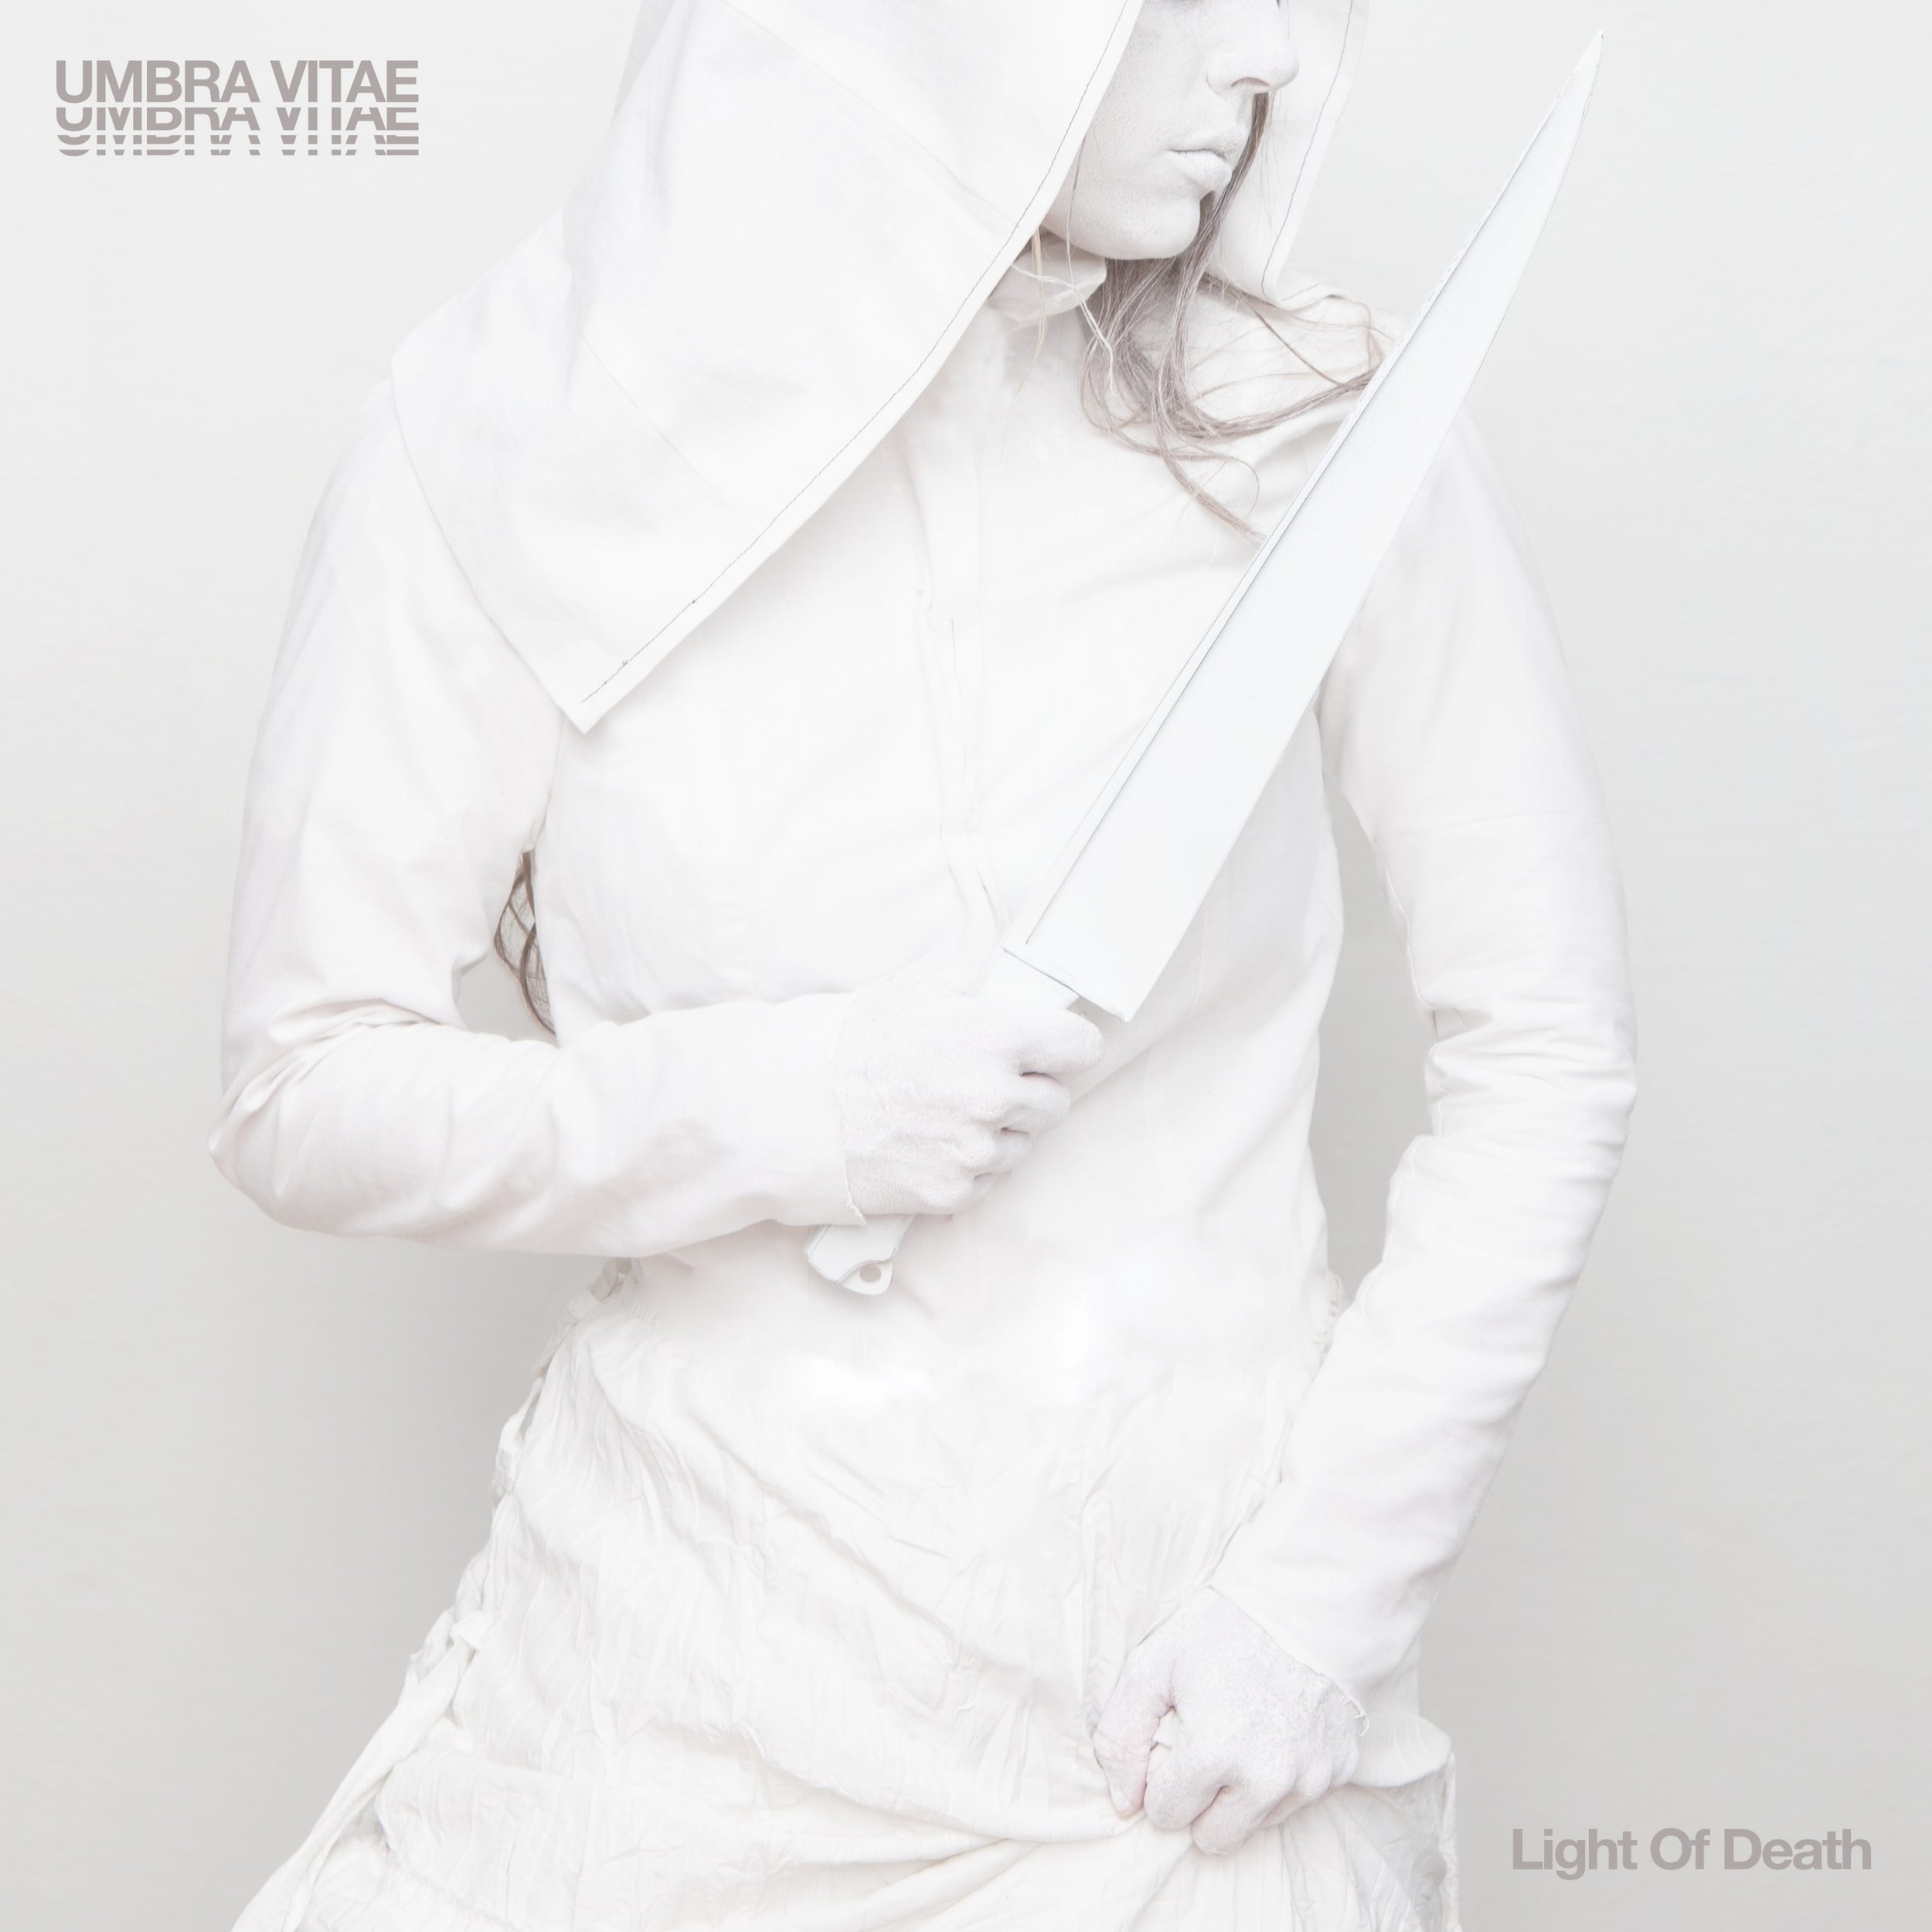 Umbra Vitae - Light Of Death - Cover.jpg